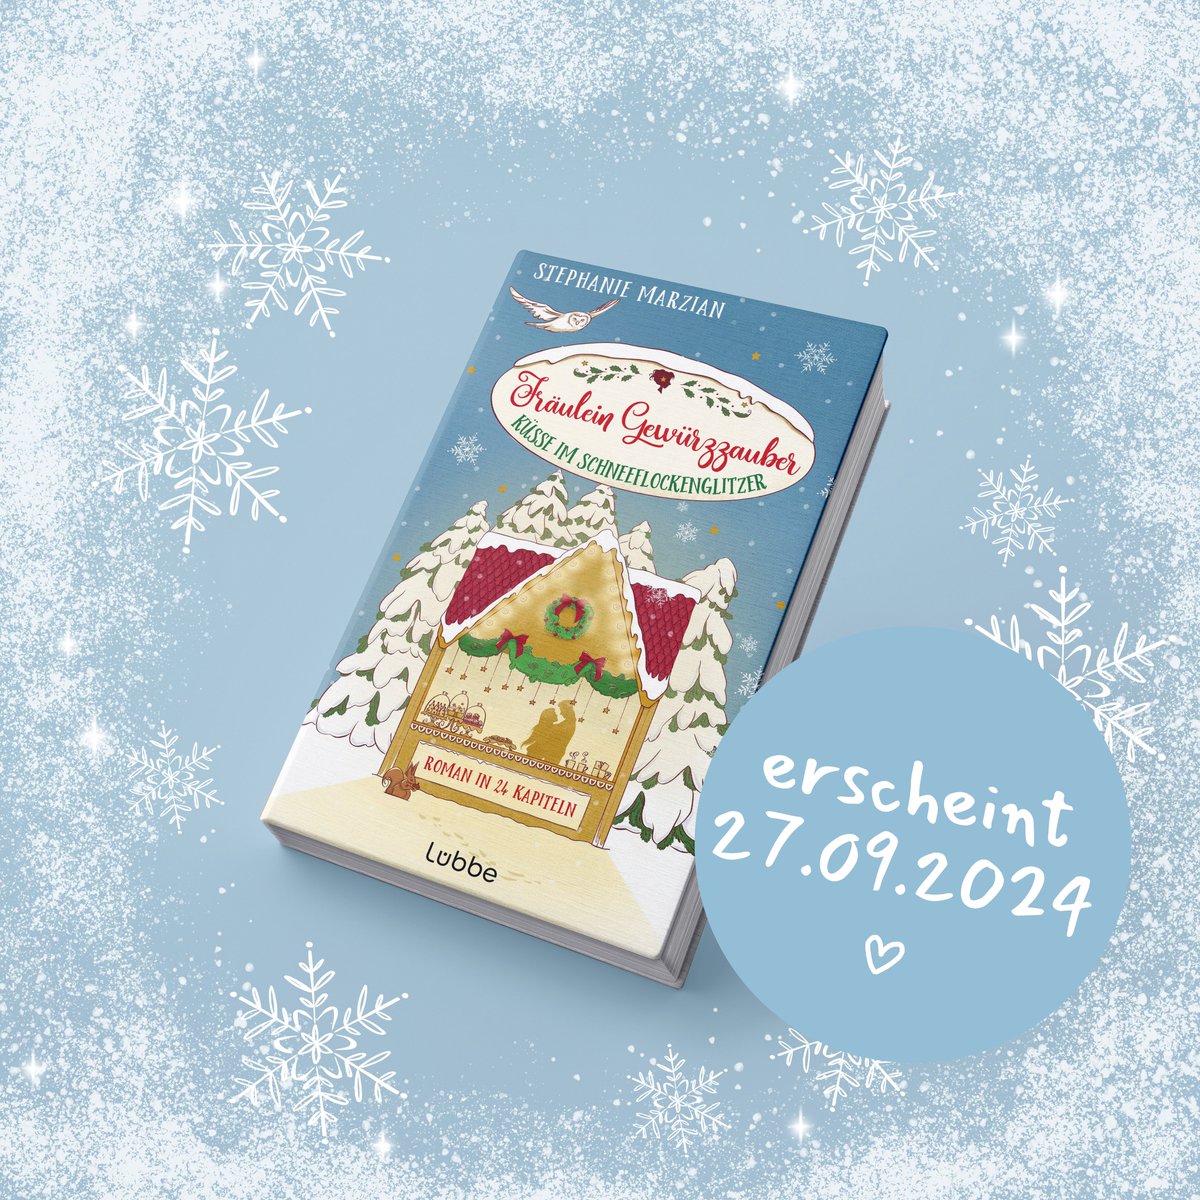 ✨FREU-TAG!!!✨ #CoverReveal
Endlich darf ich Euch das Cover meines neuen Weihnachtsromans zeigen! ❤️

Fräulein Gewürzzauber - Küsse im Schneeflockenglitzer erscheint am ❄️ 27.09. und kann jetzt schon überall, wo es Bücher gibt, vorbestellt werden!   

#bookstagram #liebesroman